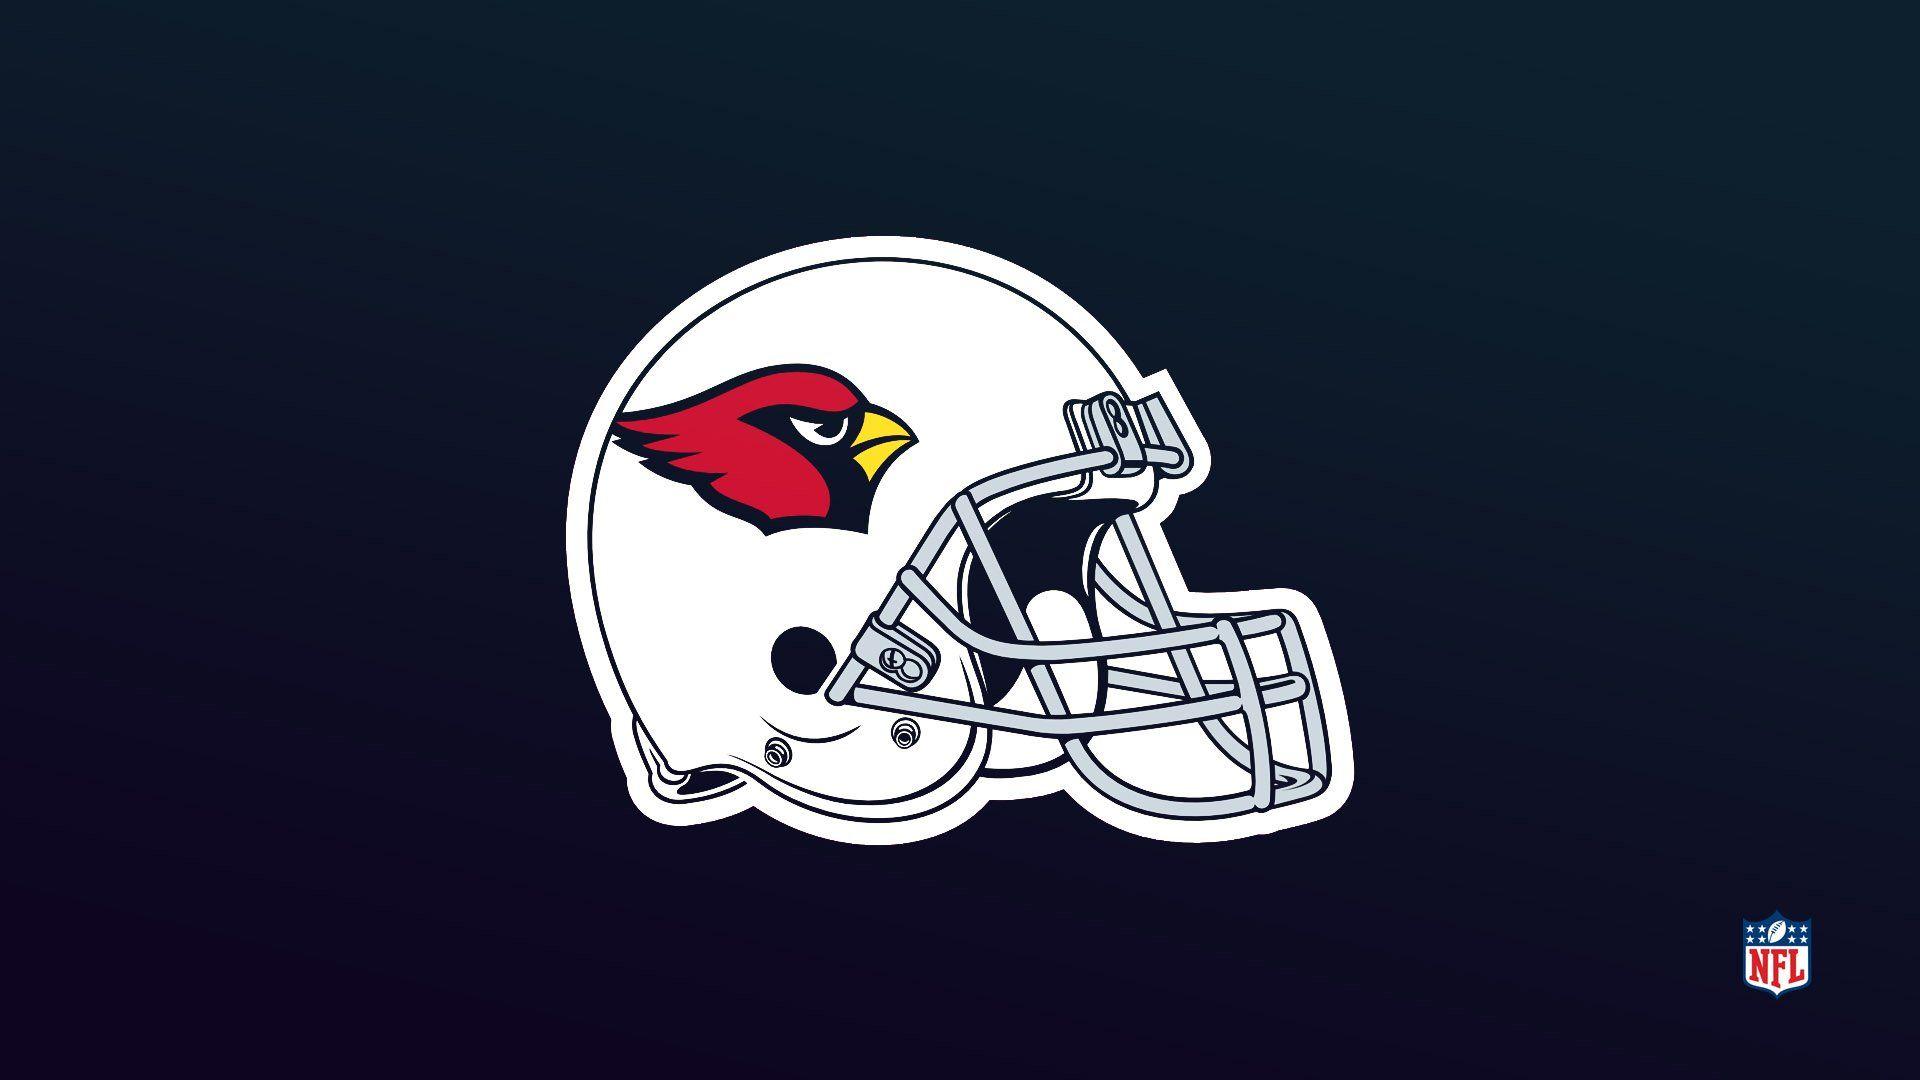 Arizona Cardinals NFL Logo UHD 4K Wallpaper  Pixelzcc